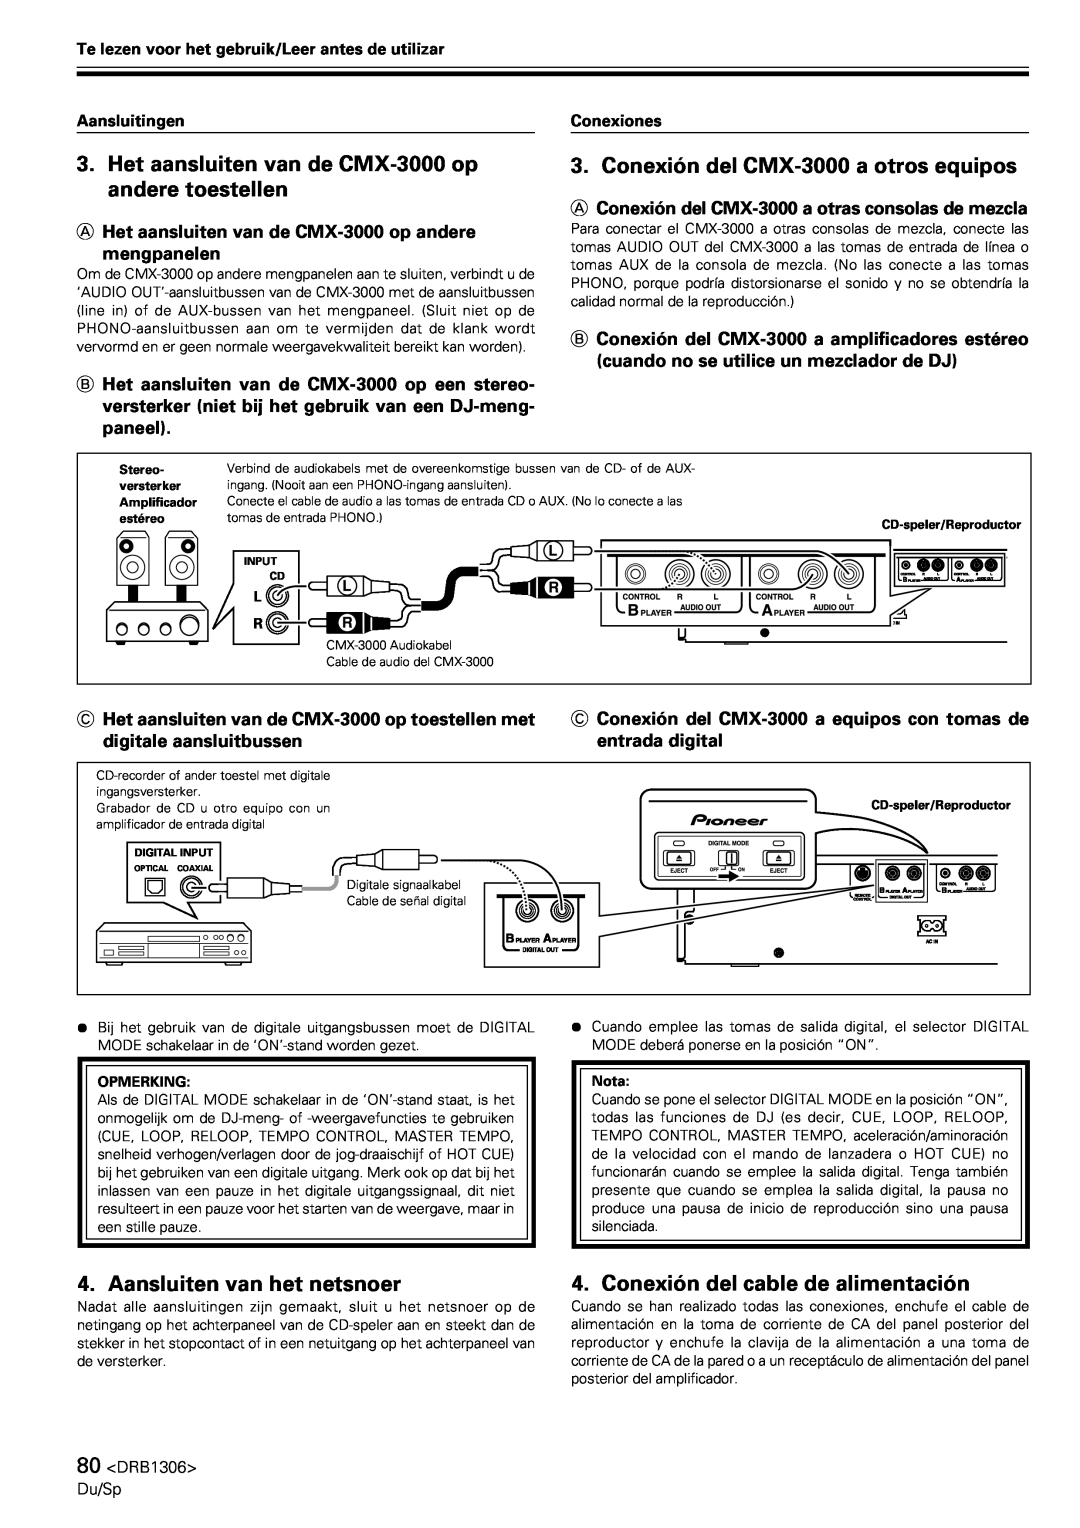 Pioneer Conexión del CMX-3000a otros equipos, Aansluiten van het netsnoer, Conexión del cable de alimentación 